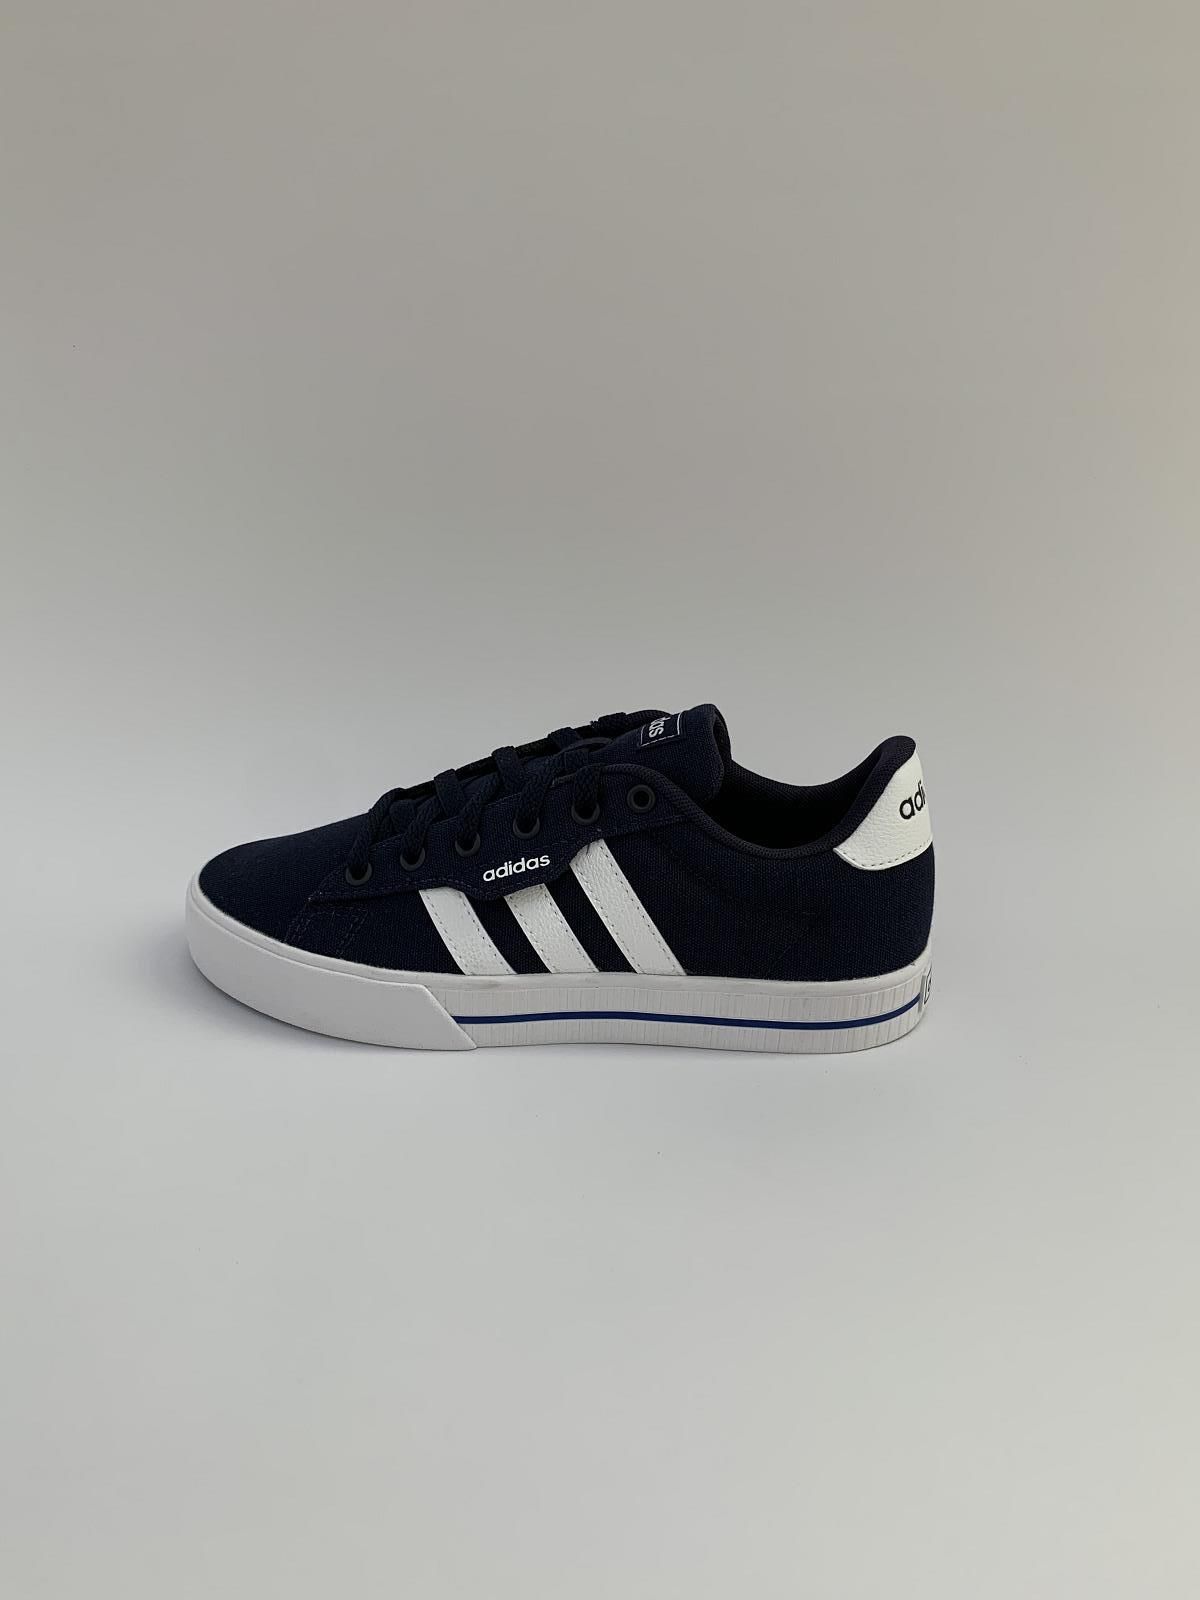 Zes Heerlijk accent Adidas Sneaker Blauw jongens (Trainer Daily Jr.Bl. - FX7268) - Schoenen Luca